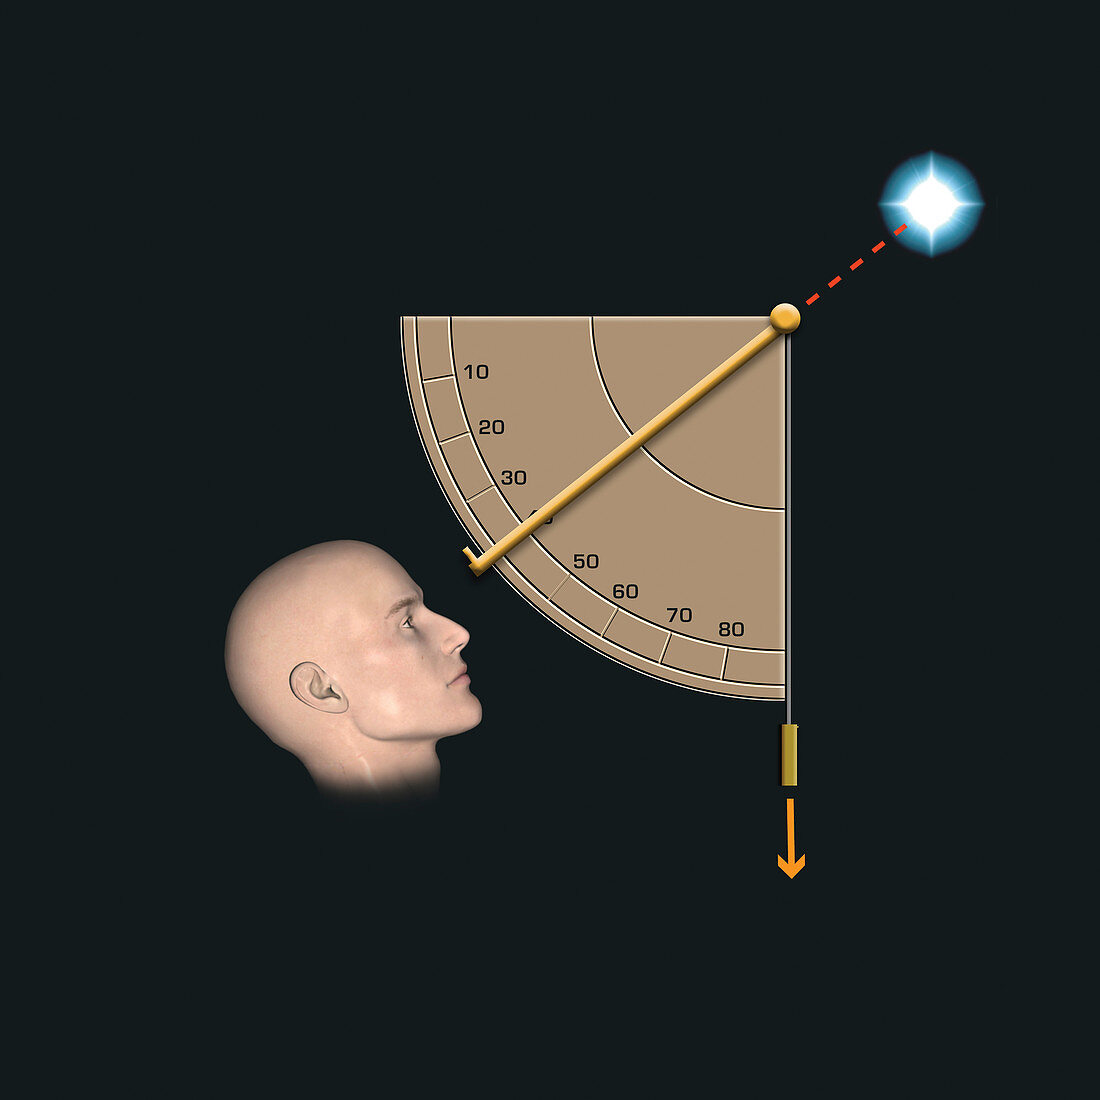 Measuring star positions, illustration